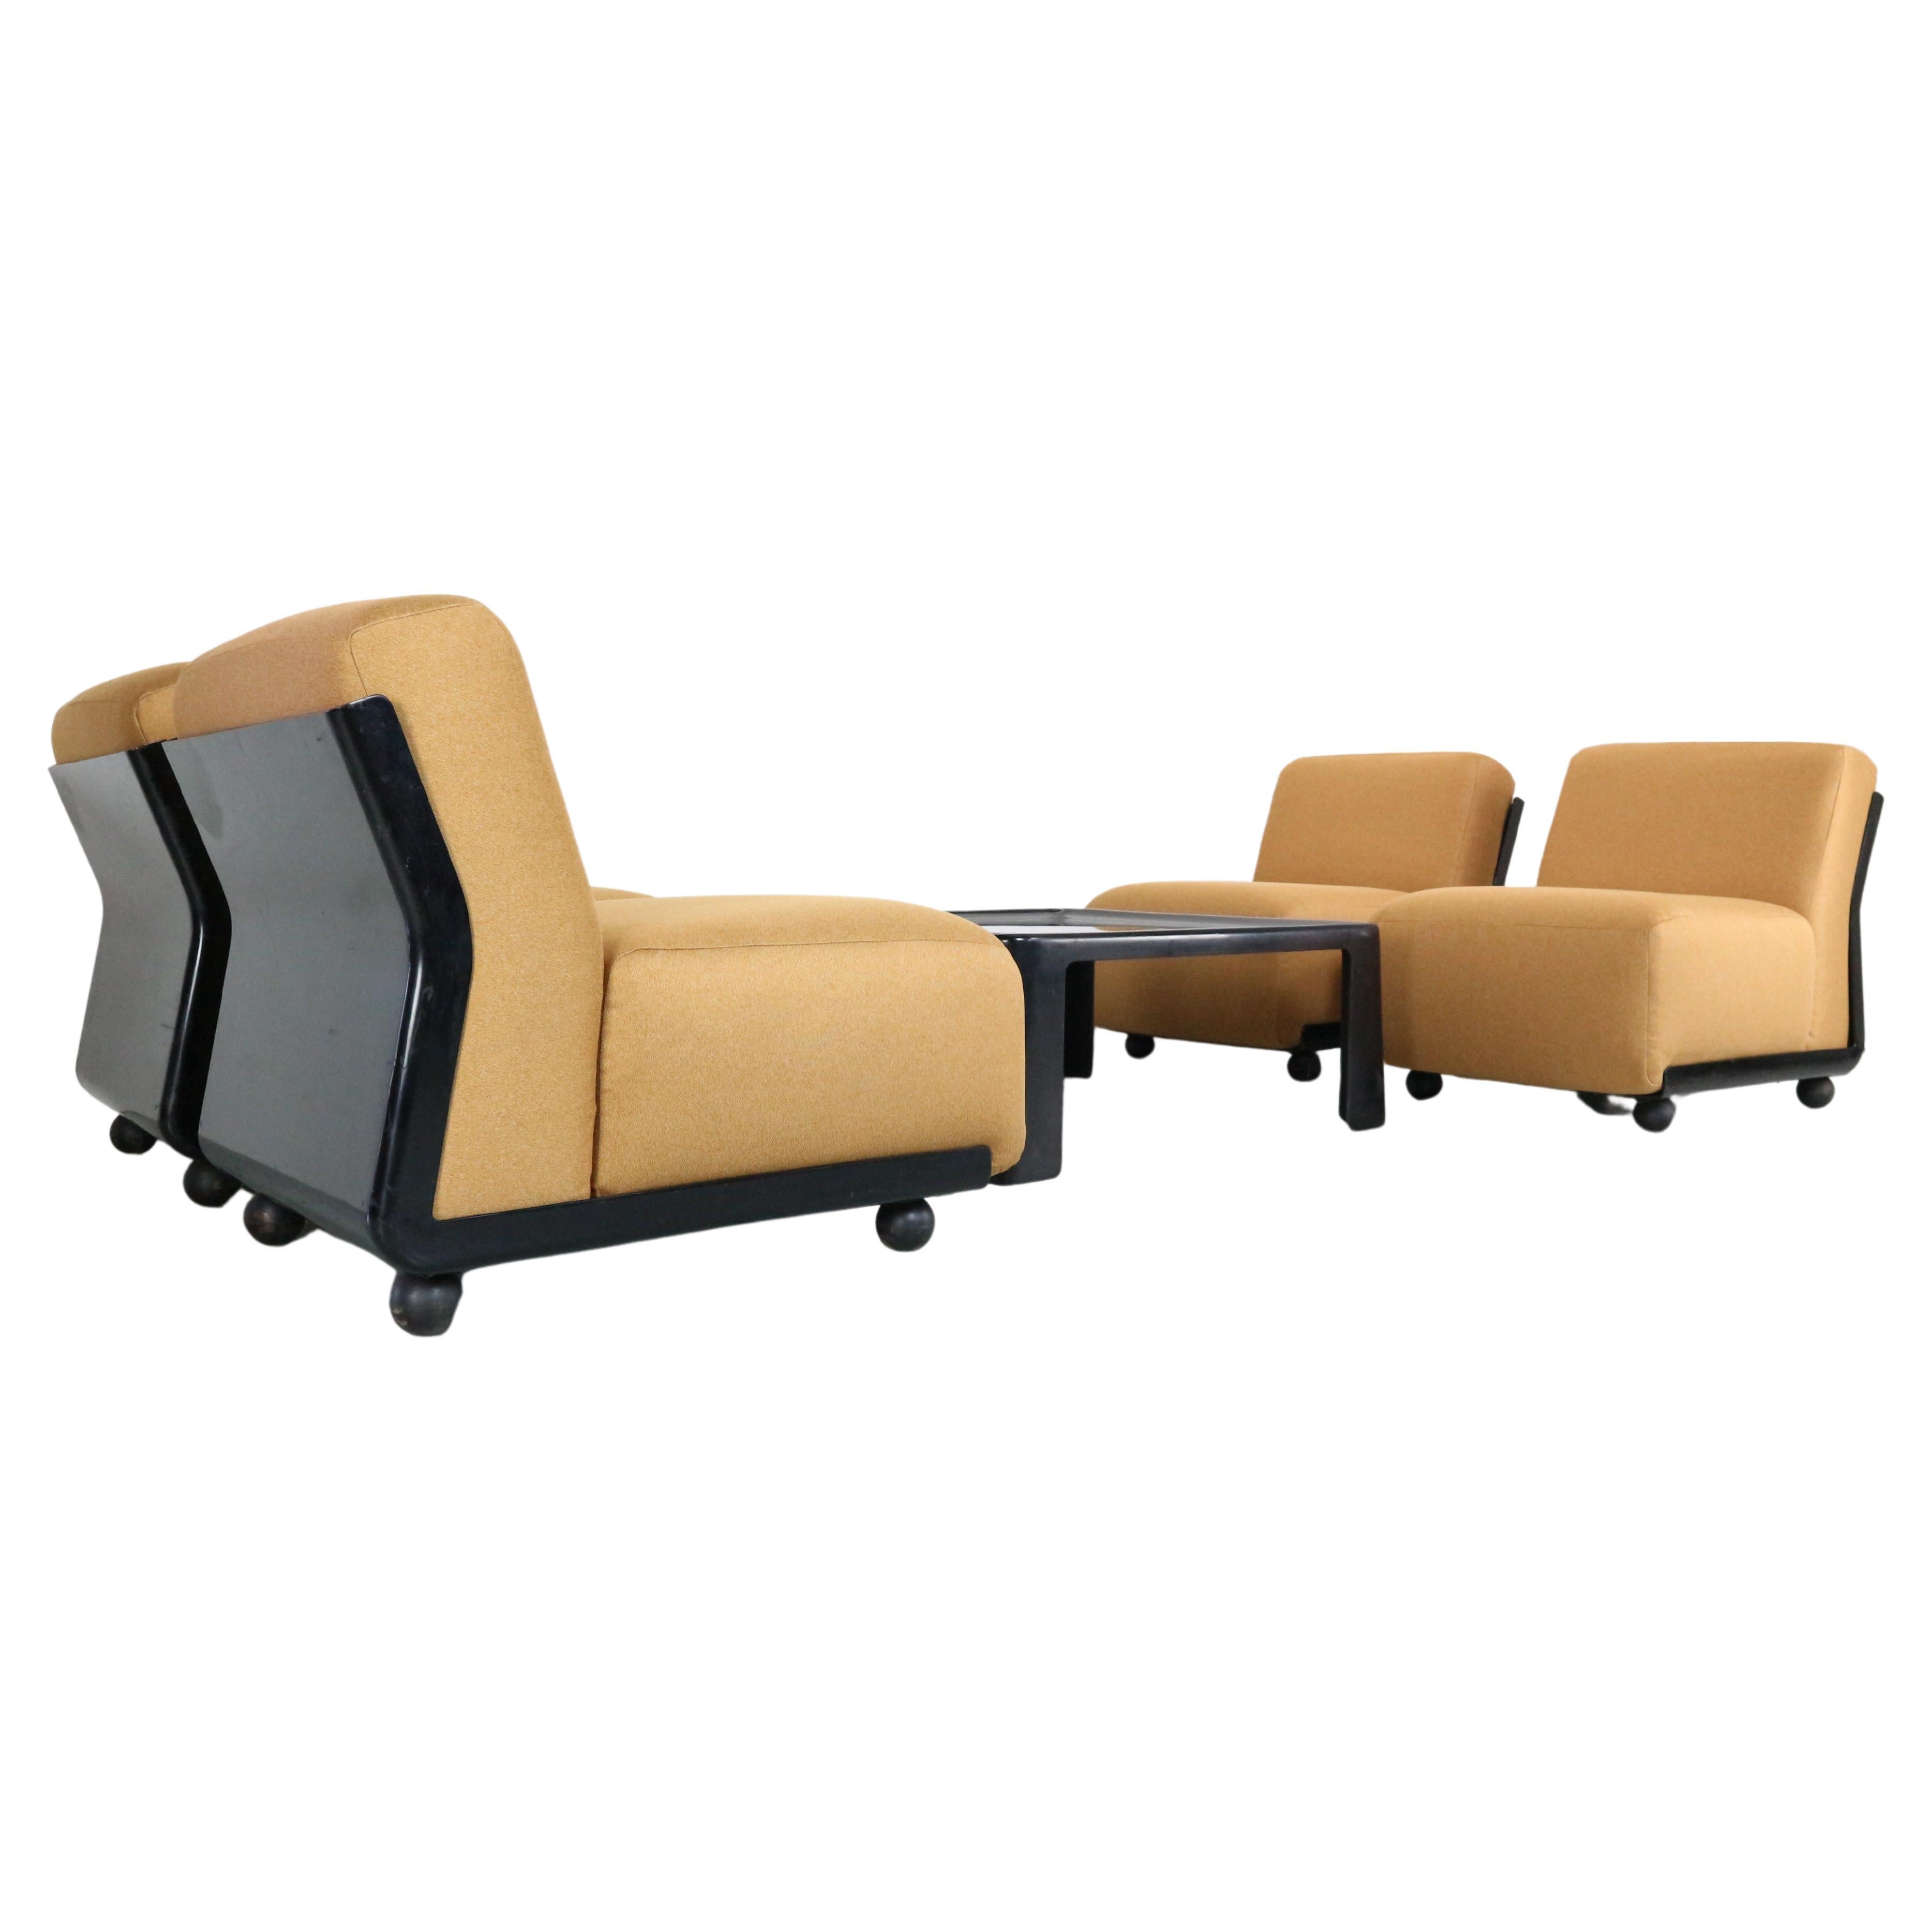 Vier Stühle amanta model 24, entworfen von Mario Bellini für C&B Italia. Sie wurden in den frühen 1970er Jahren hergestellt und unterscheiden sich vom normalen Amanta-Stuhl dadurch, dass sie schmaler sind und die dünne vertikale Kerbe in der Mitte